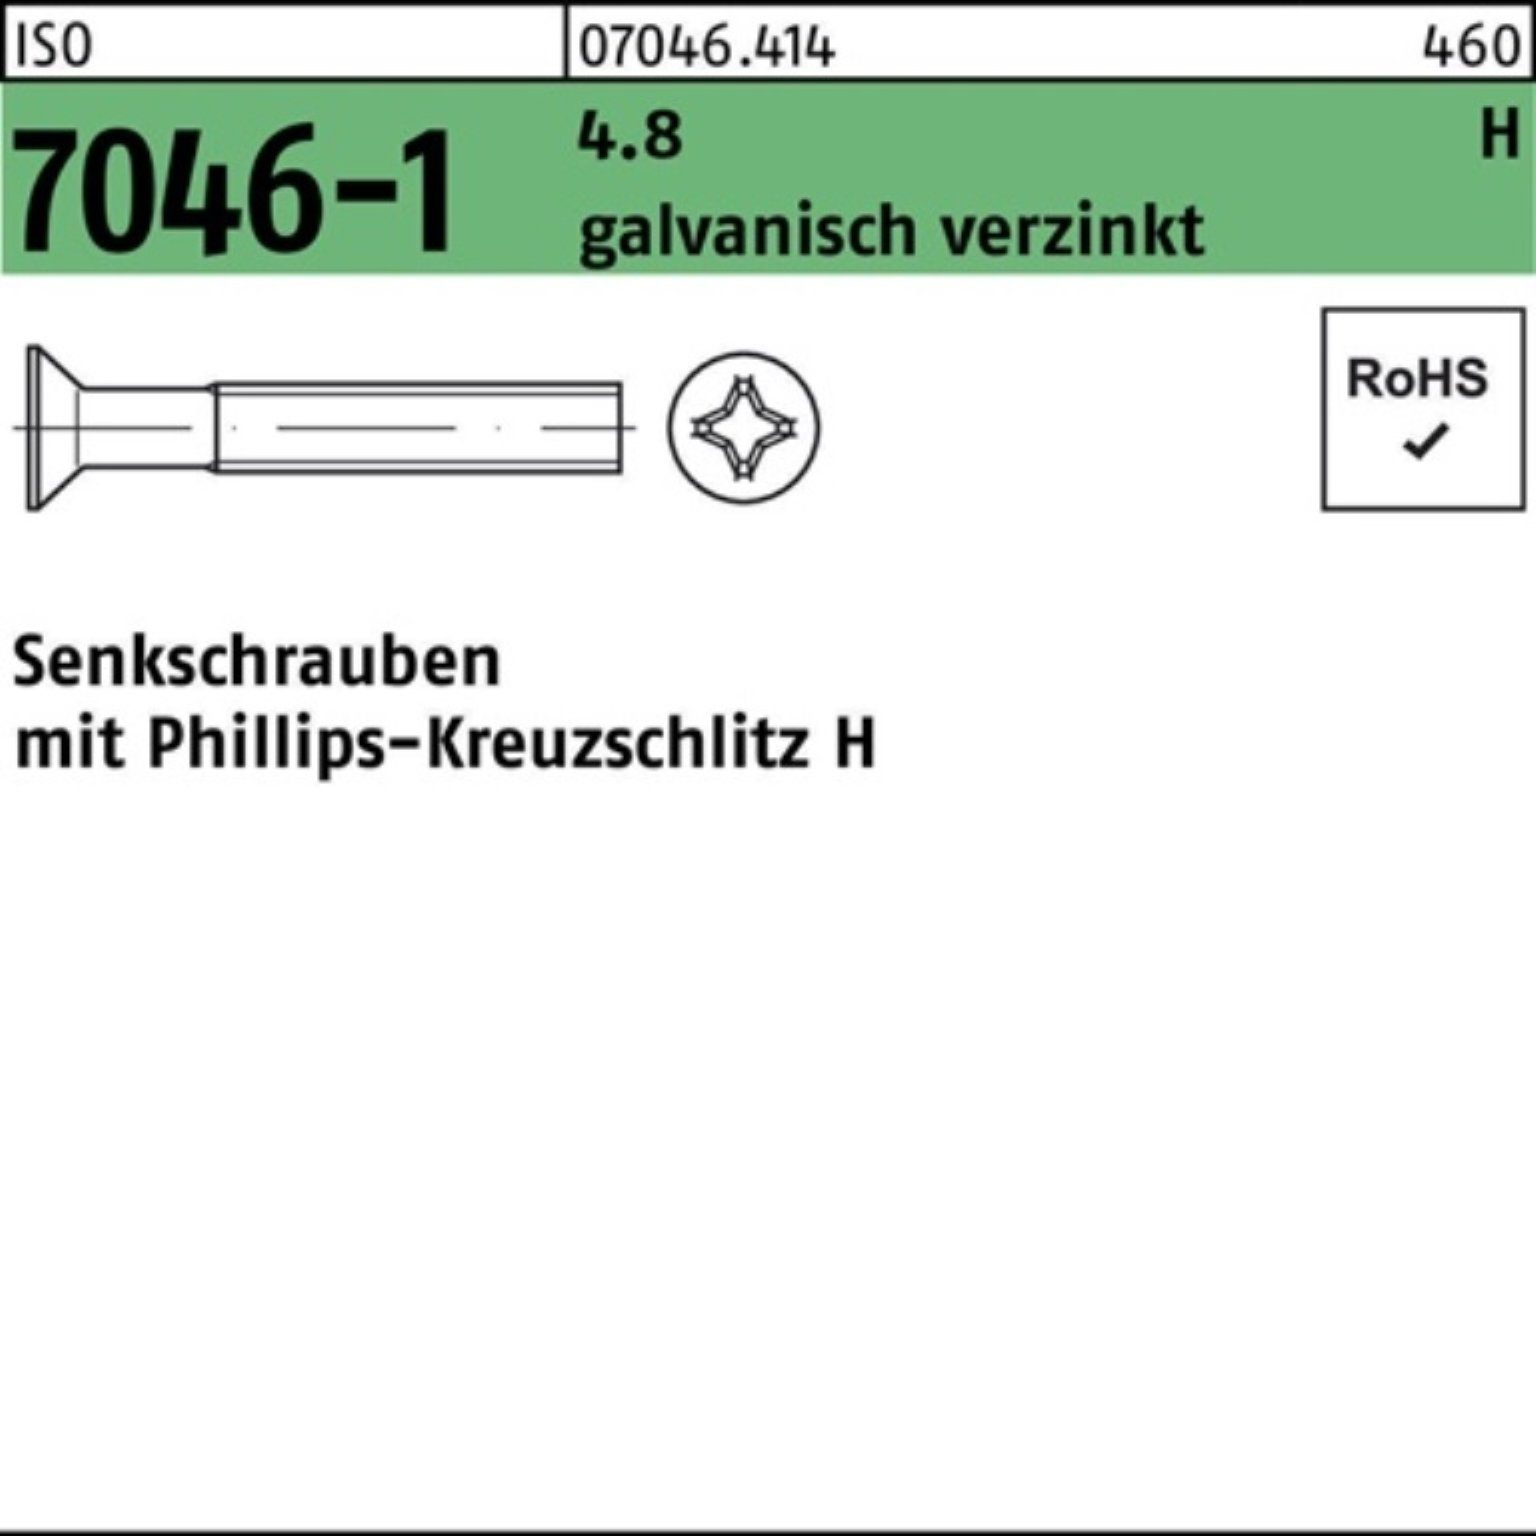 Reyher Senkschraube 200St. 4.8 galv.verz. Senkschraube M6x8-H Pack PH 200er 7046-1 ISO ISO